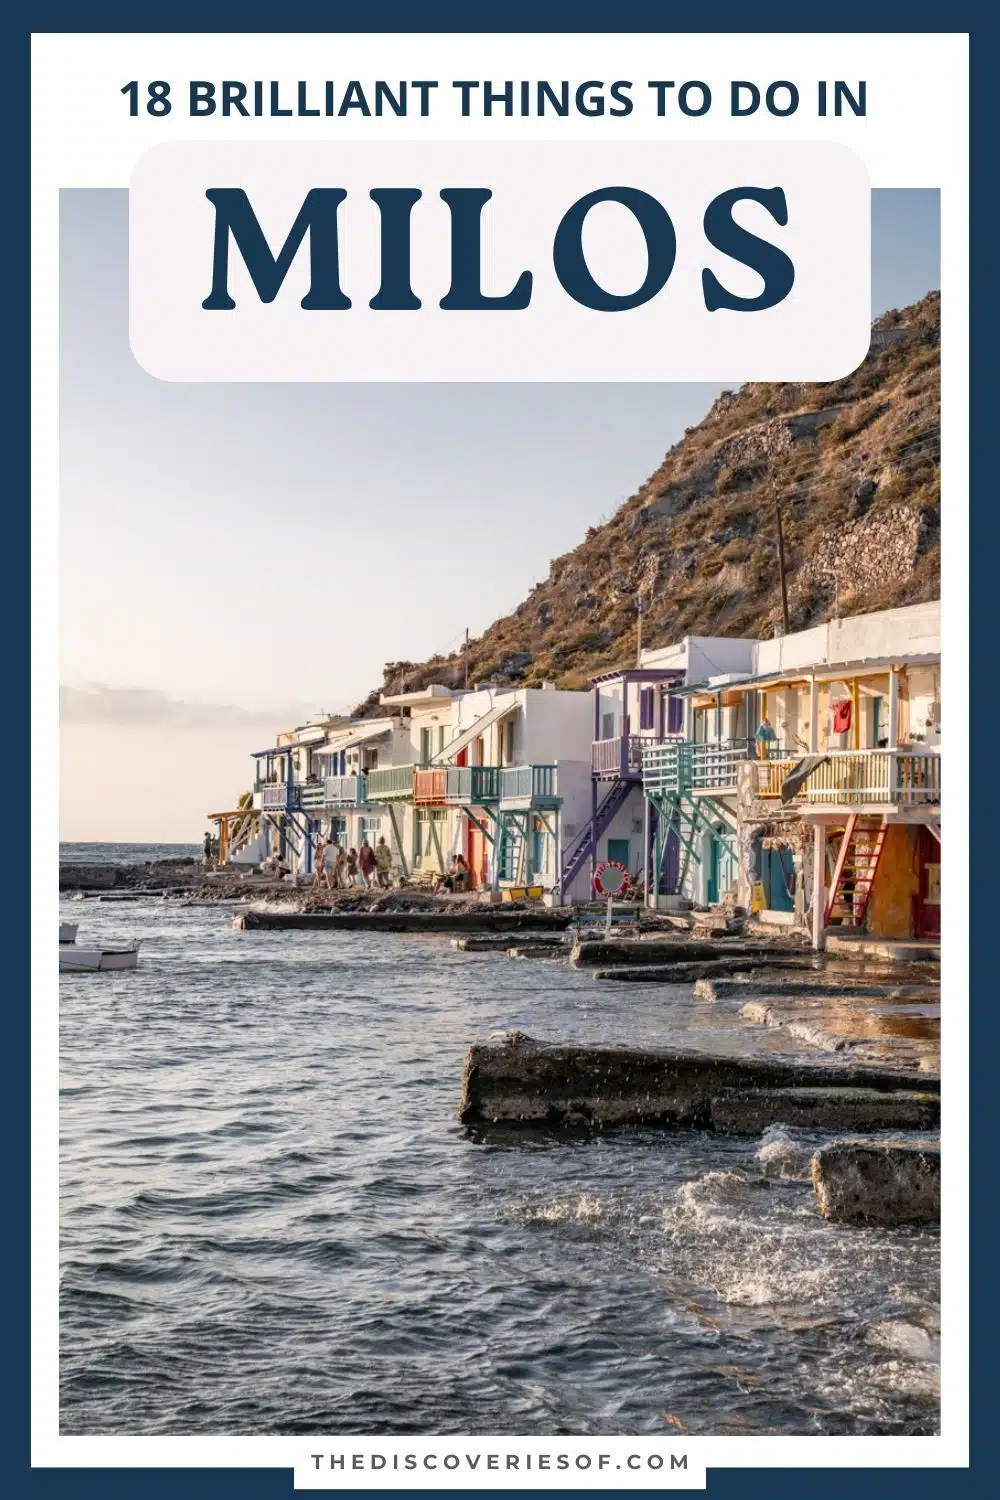 milos greece tourist office